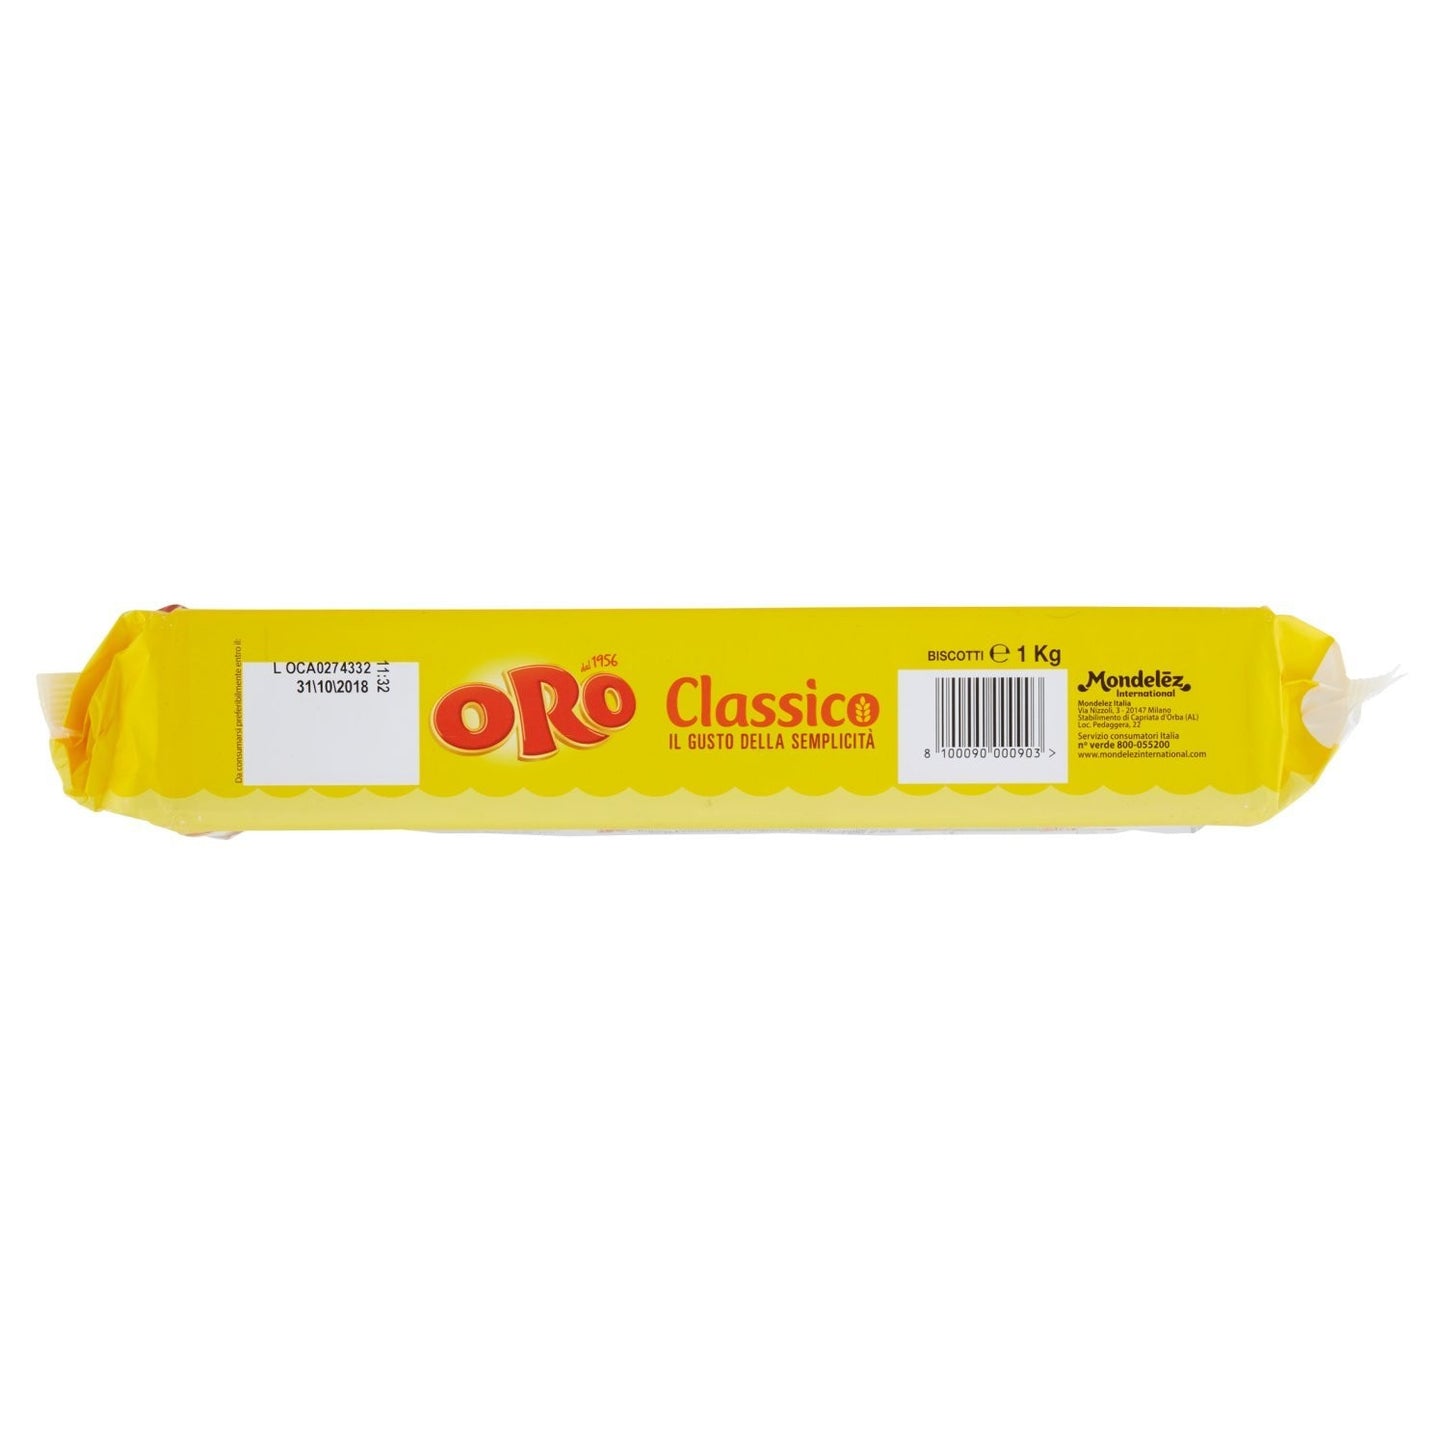 Oro - Classico, Biscotti Impacchettati Caldi - 1000 g